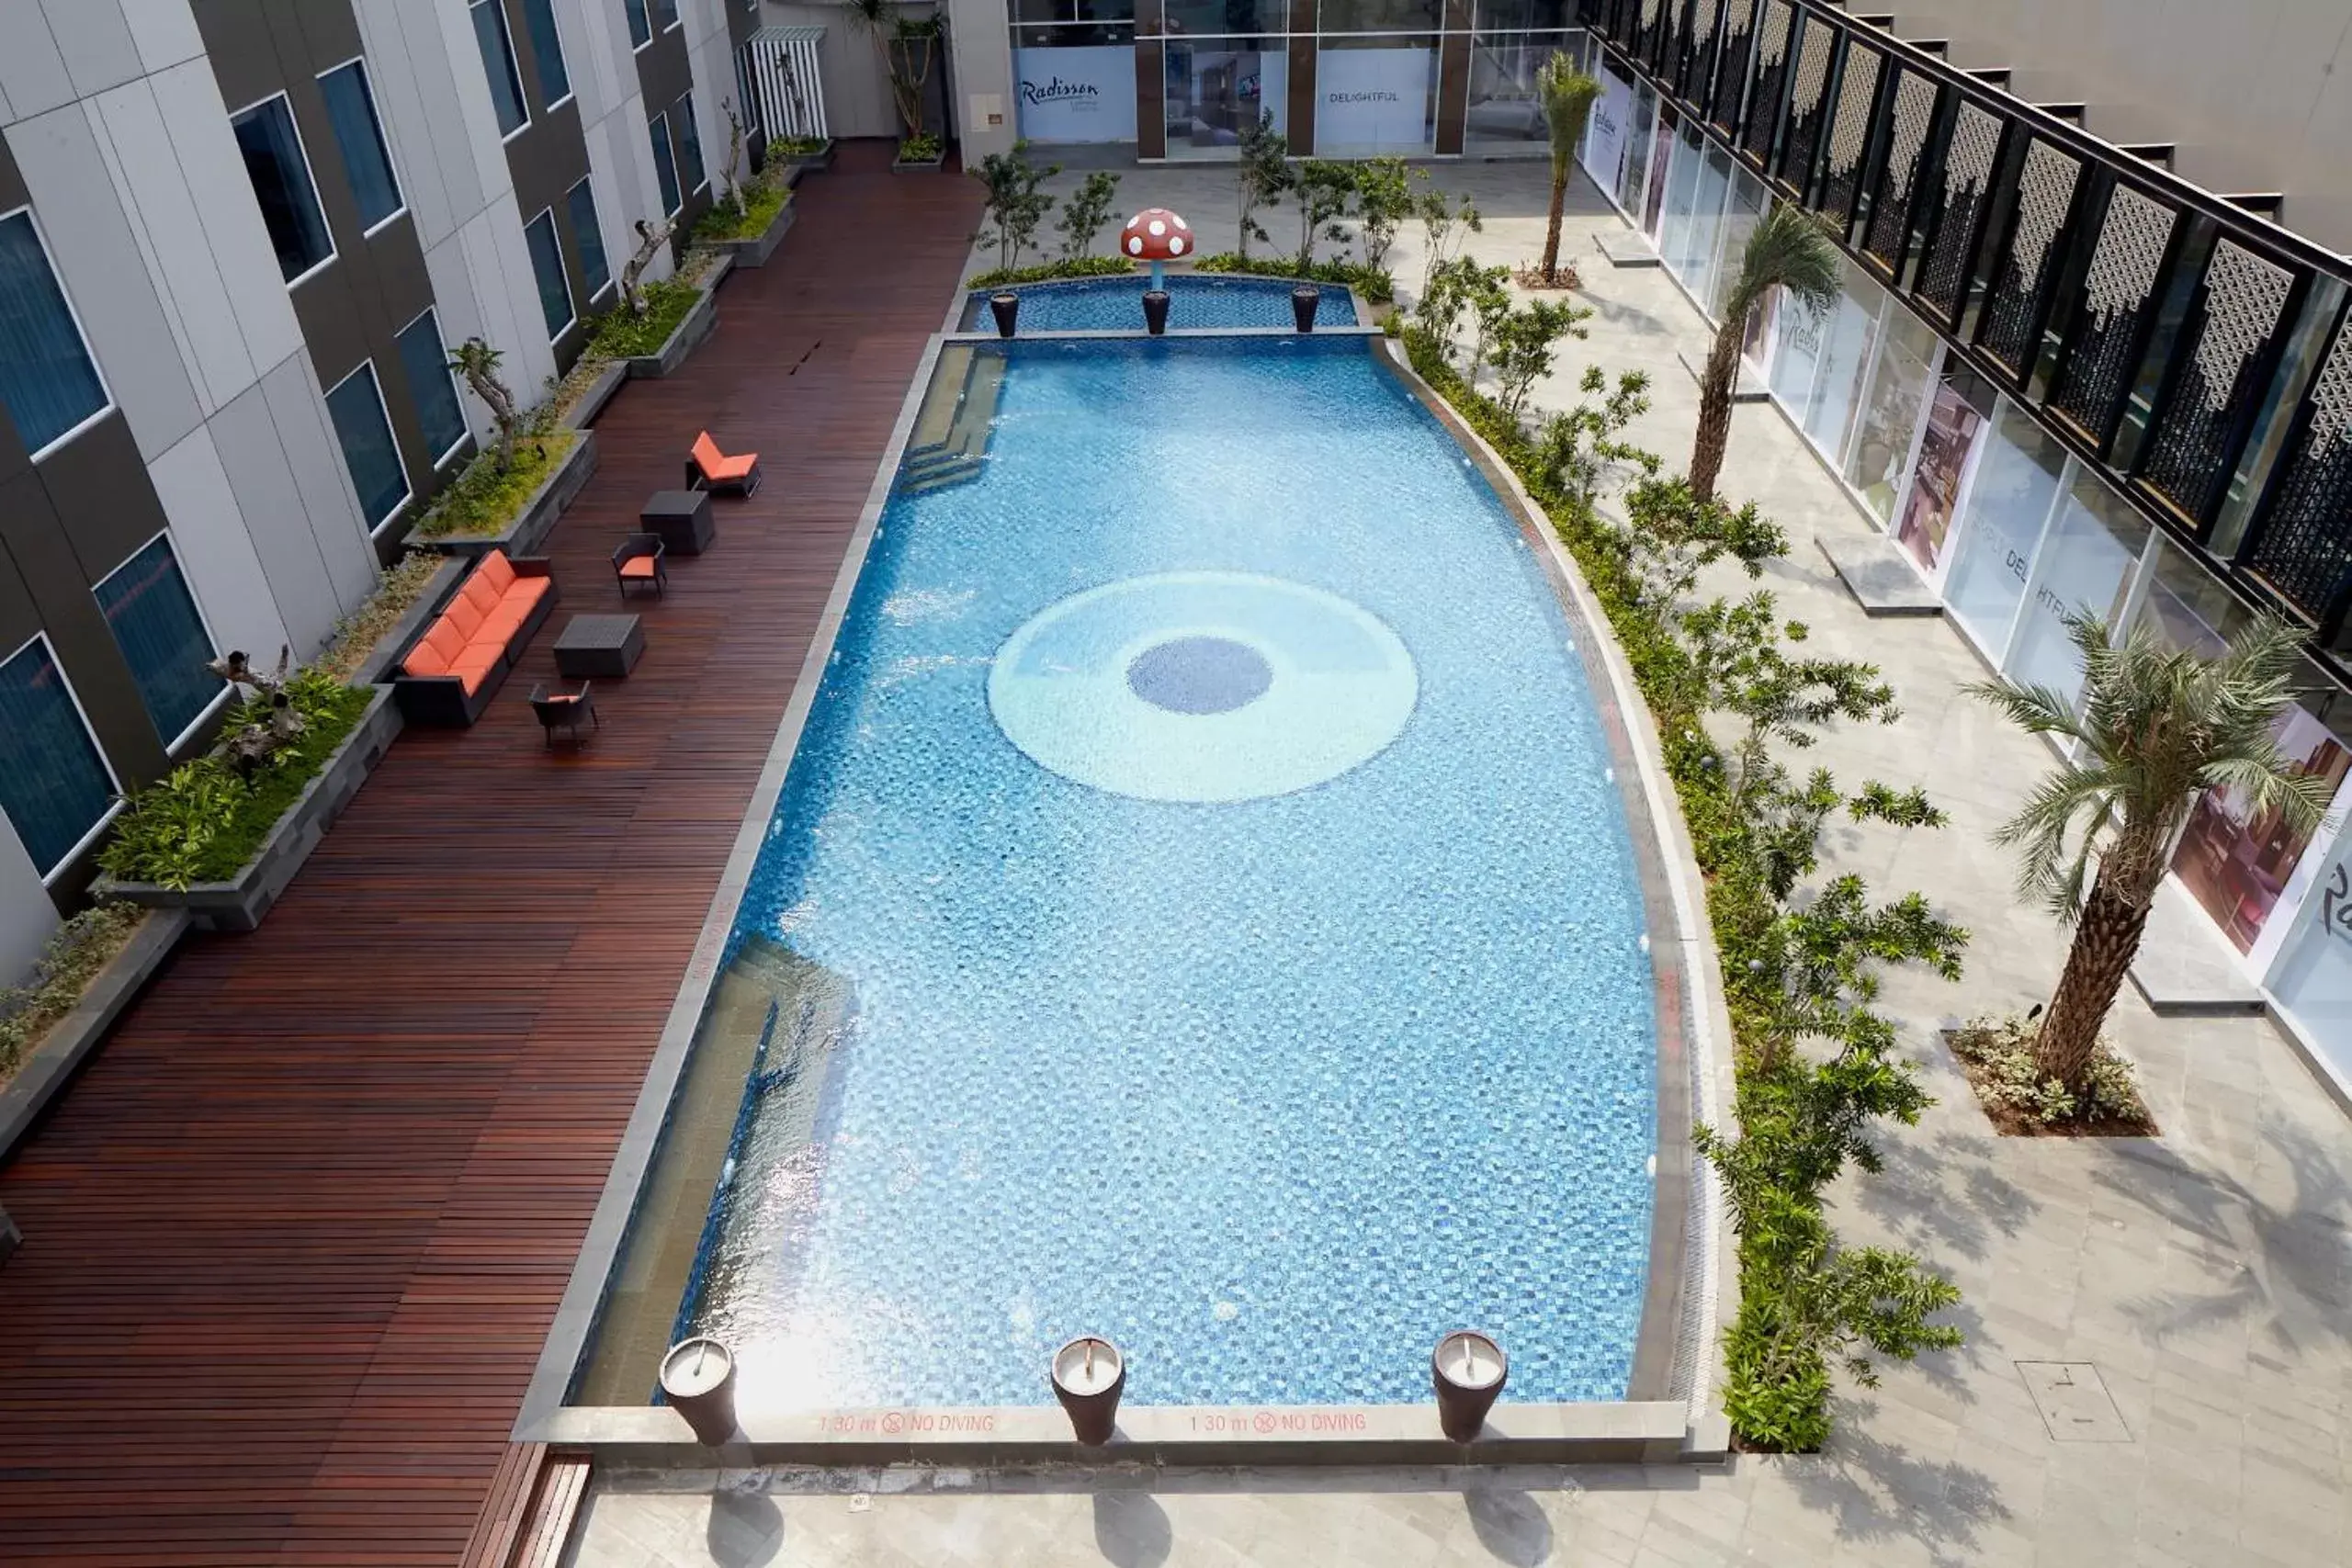 Swimming pool, Pool View in Radisson Lampung Kedaton